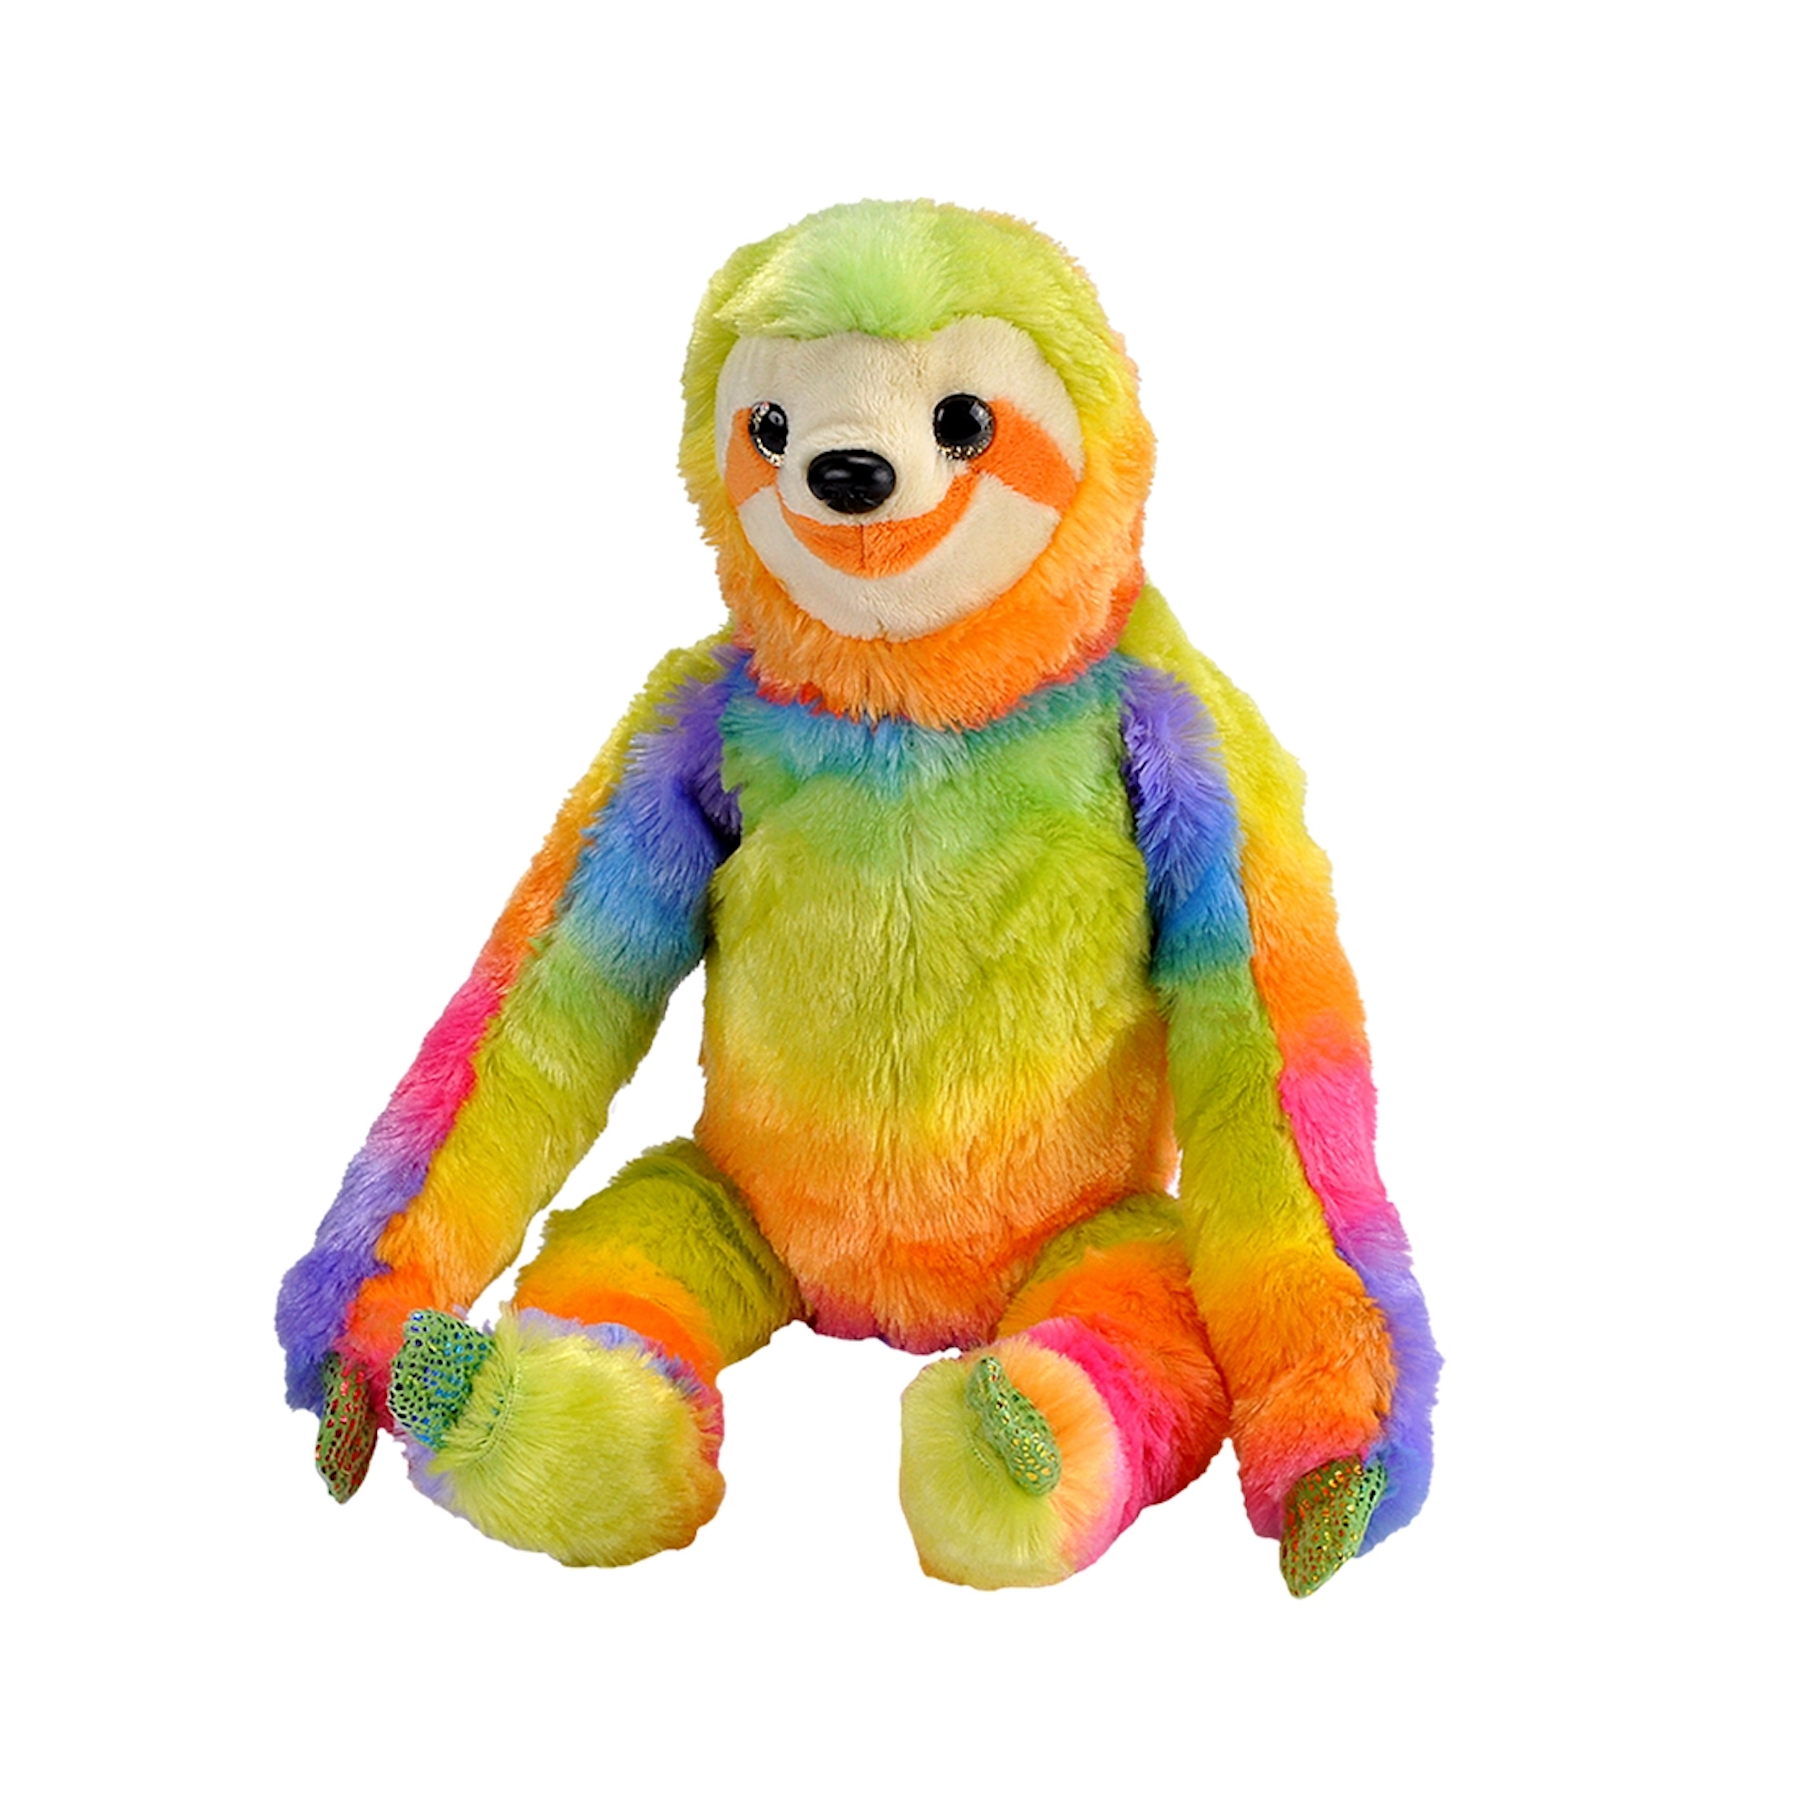 Rainbowkins Sloth Stuffed Animal - 12"